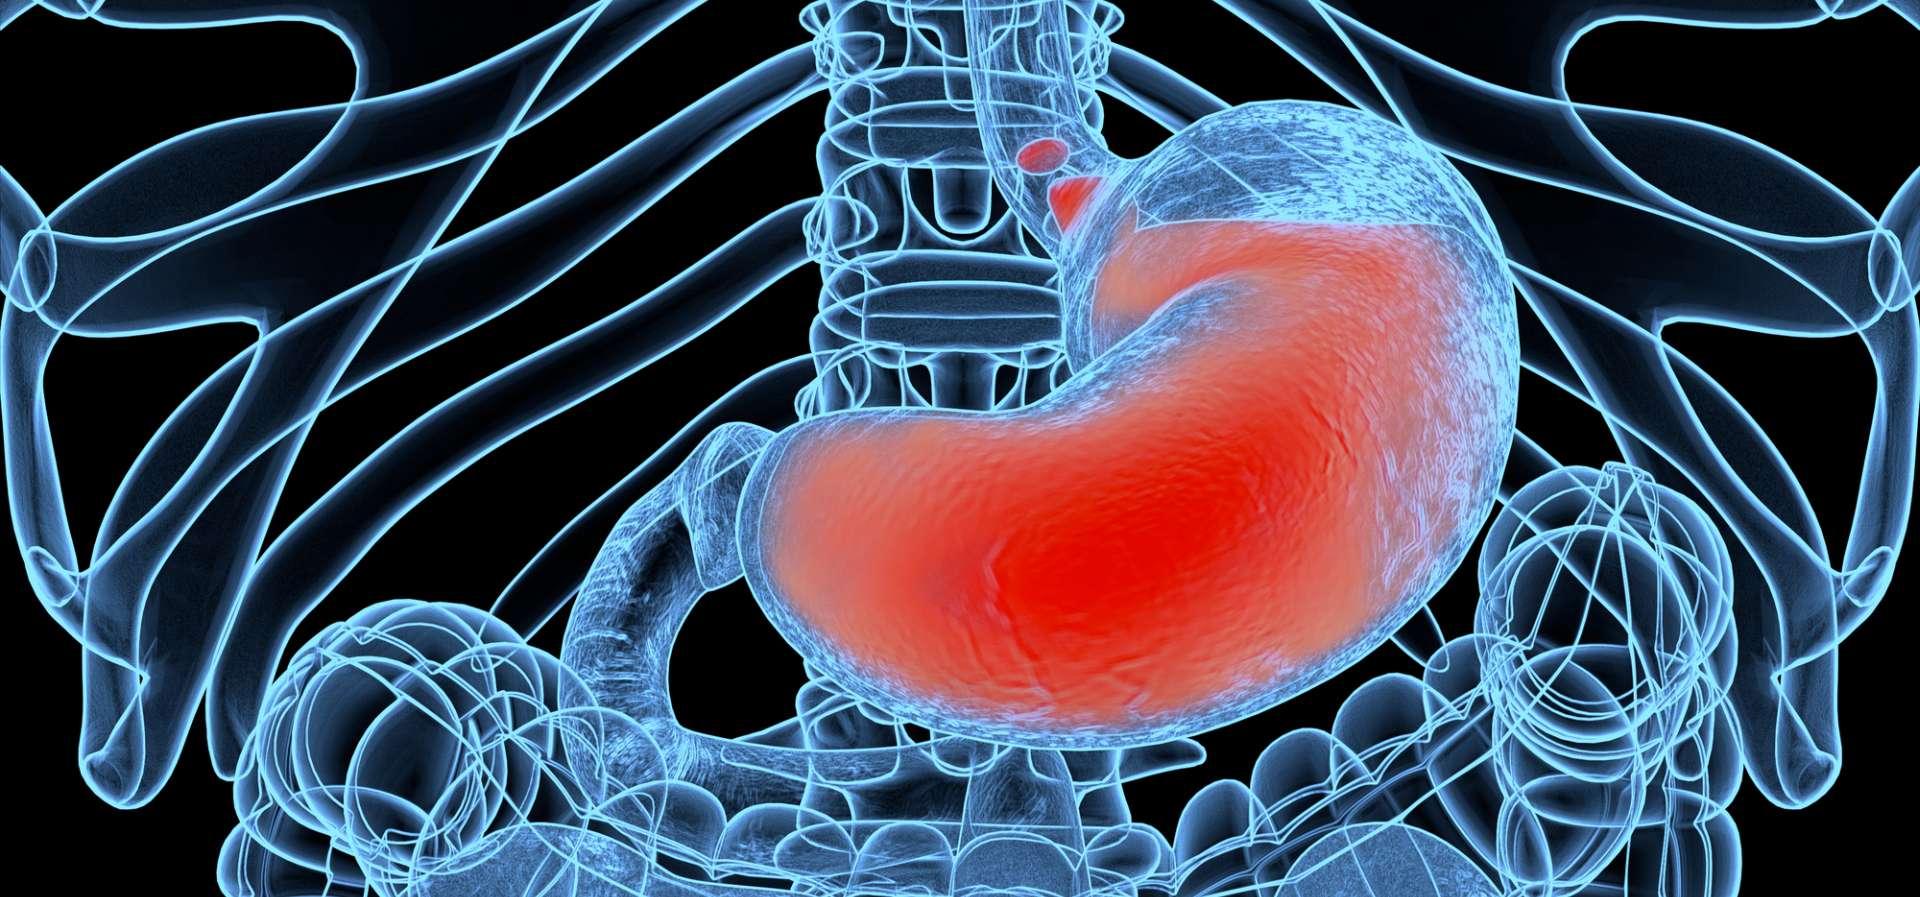 Saurer Rückfluss, GERD. Gastroösophageale Refluxkrankheit. Magen und Verdauung. Menschliche Anatomie. 3D-Illustration